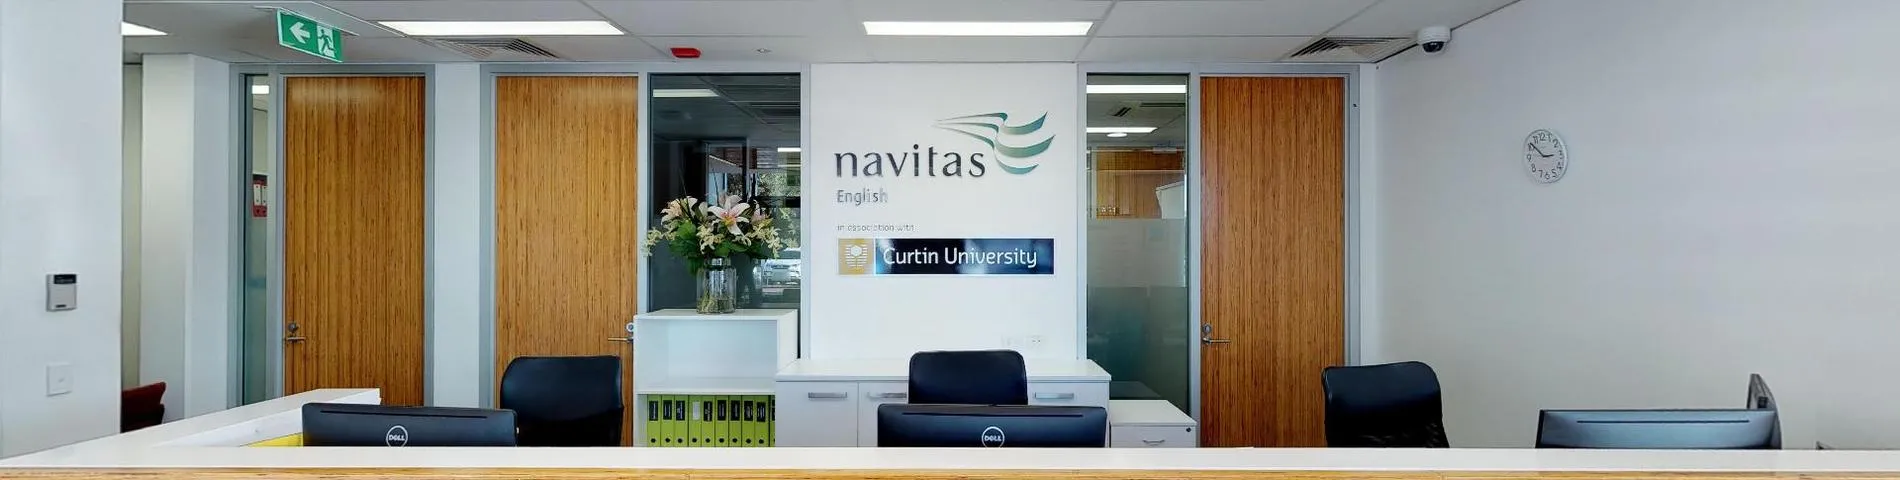 Imatge 1 de l'escola Navitas English